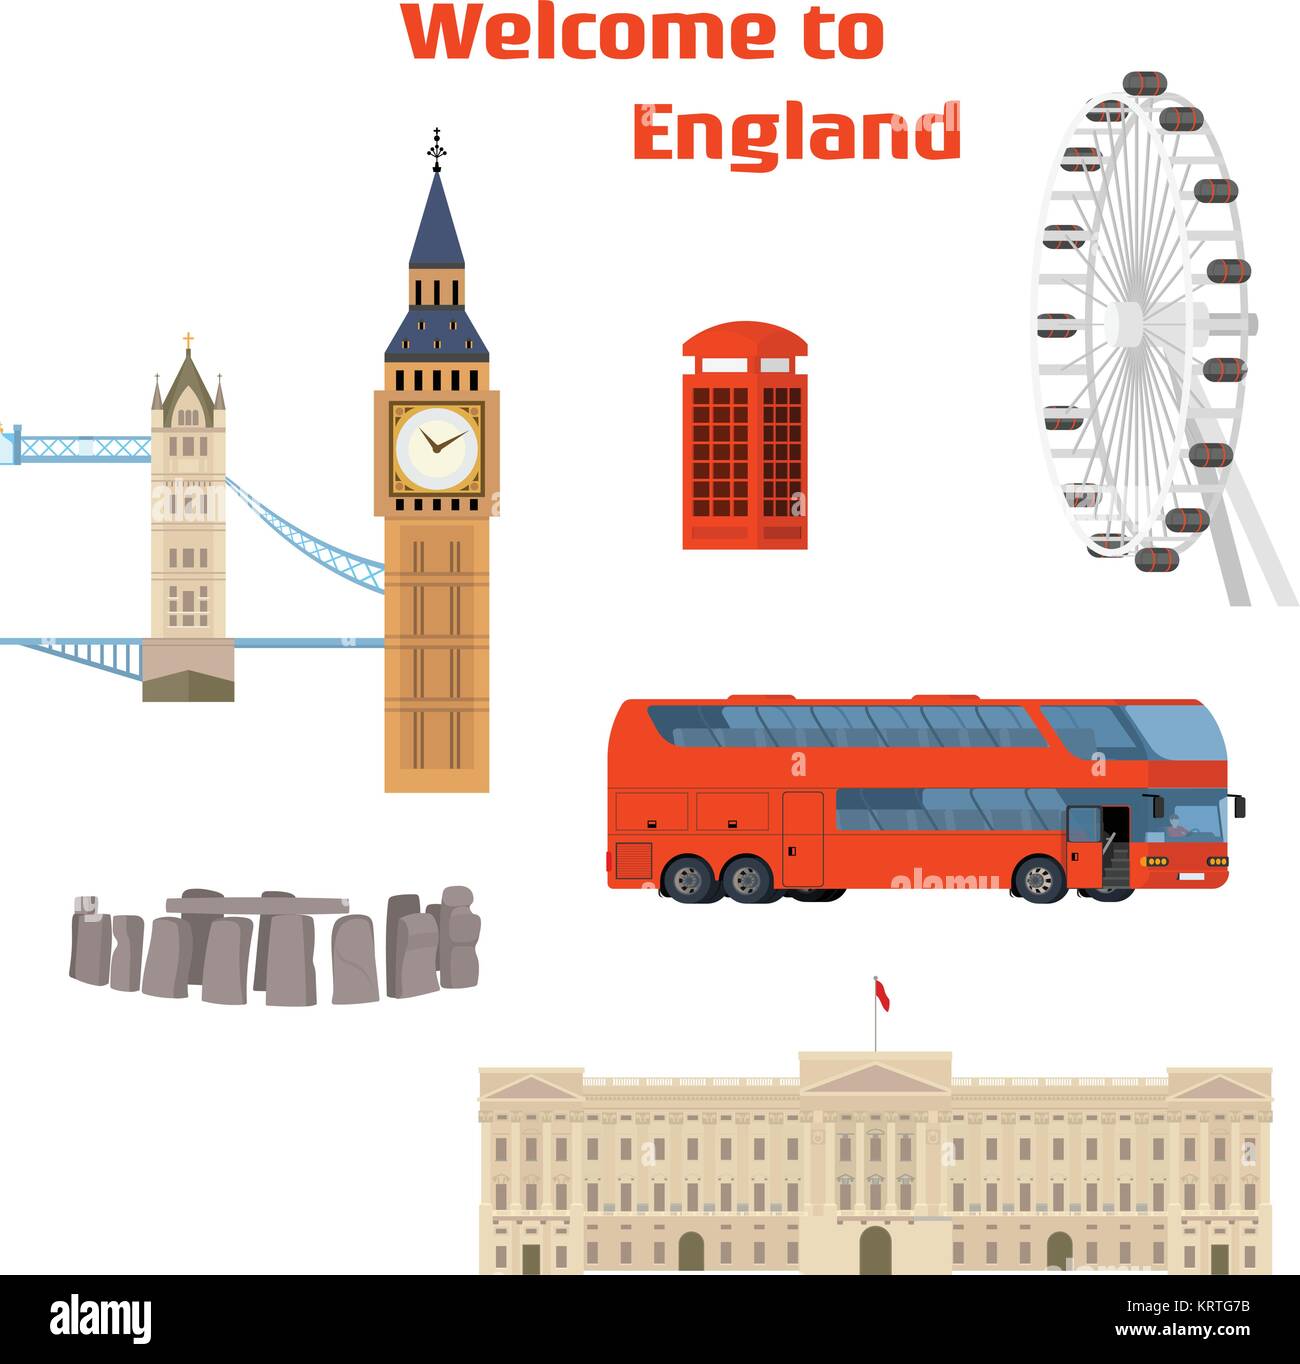 Bienvenue en Angleterre - Vecteur ensemble de la célèbre place de Londres et monument avec le Tower Bridge, Big Ben, London Eye, cabine téléphonique rouge, bus à impériale rouge Illustration de Vecteur